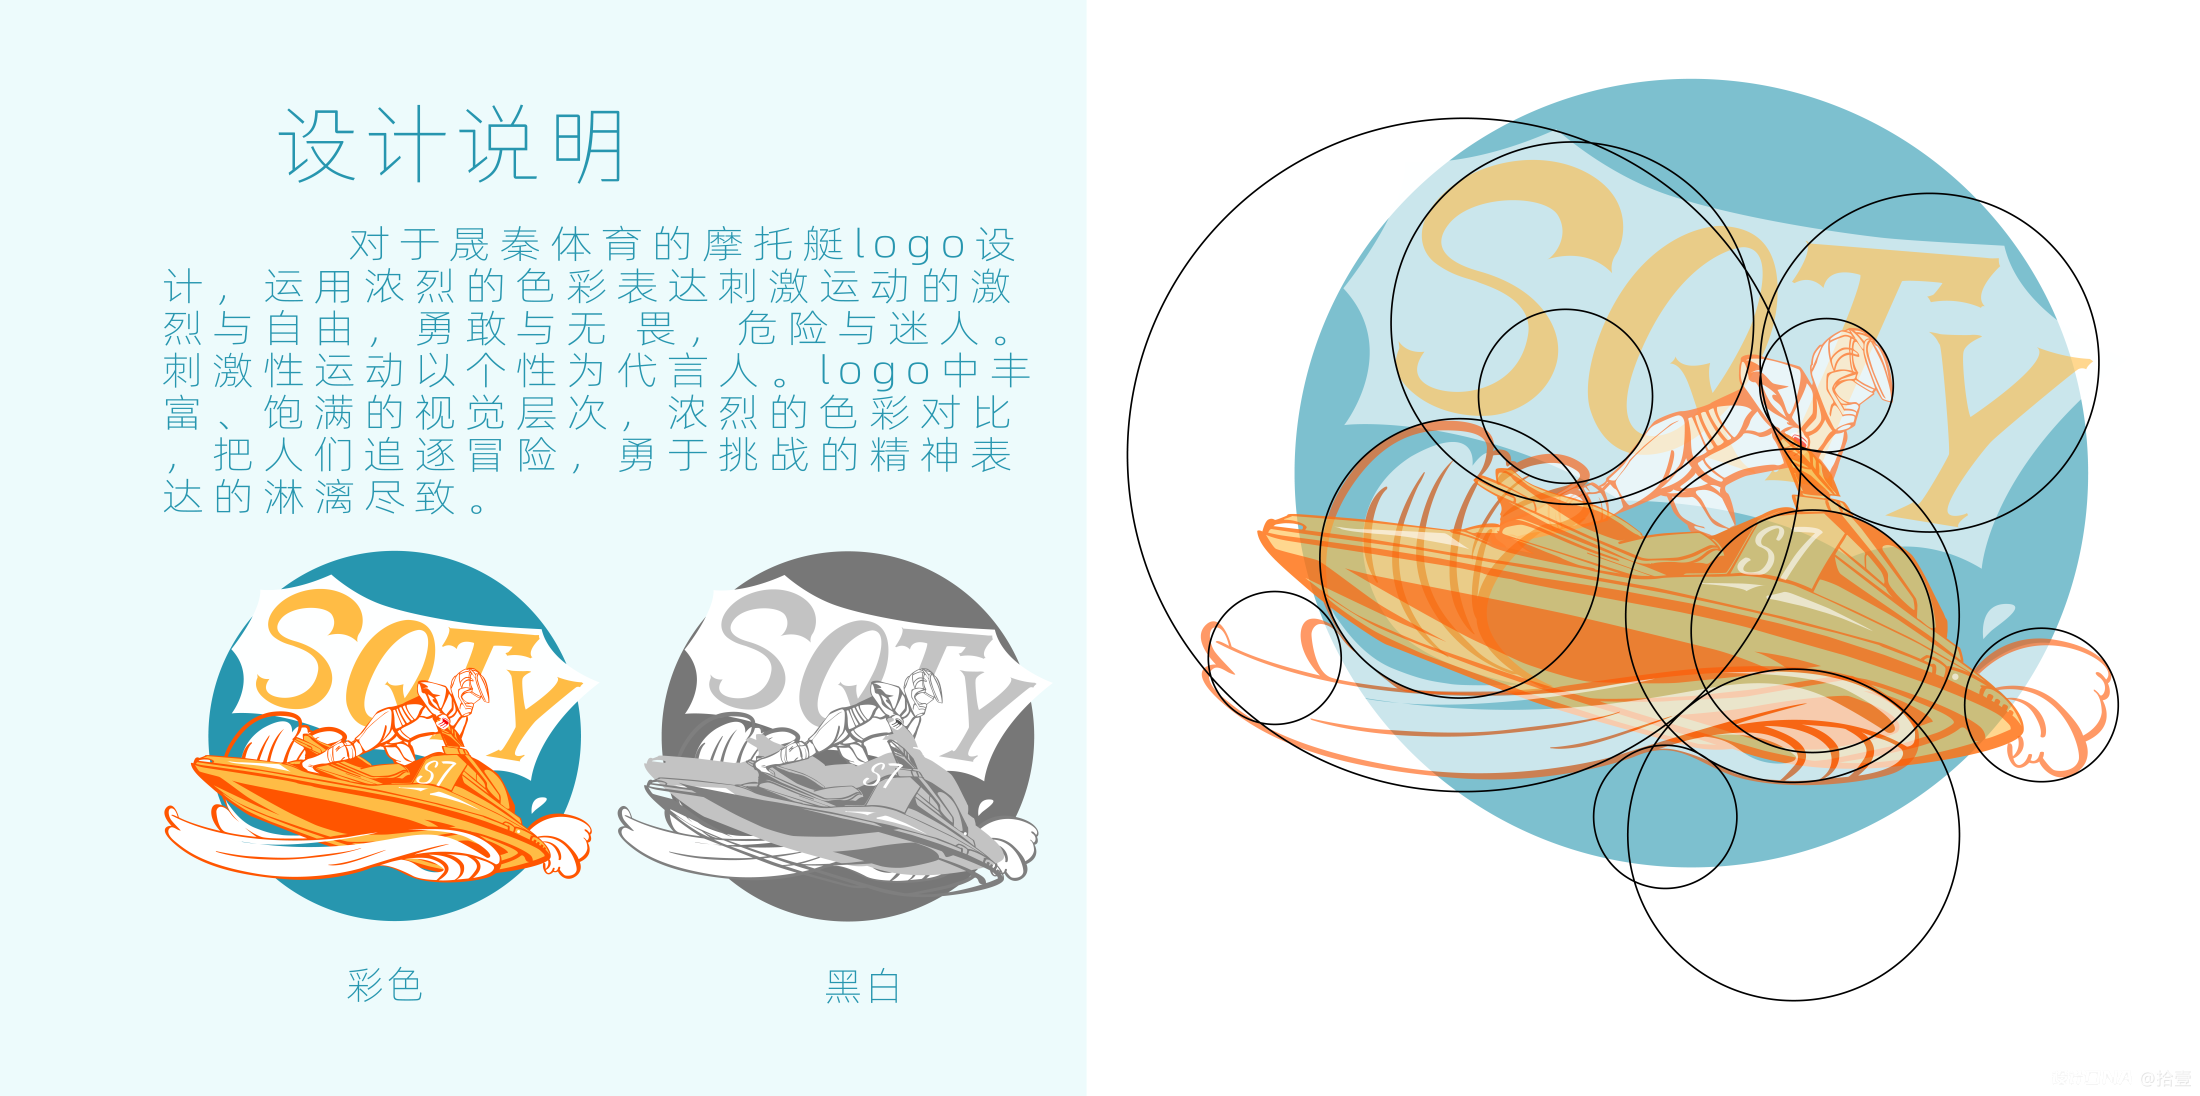 晟秦体育摩托艇logo 图2